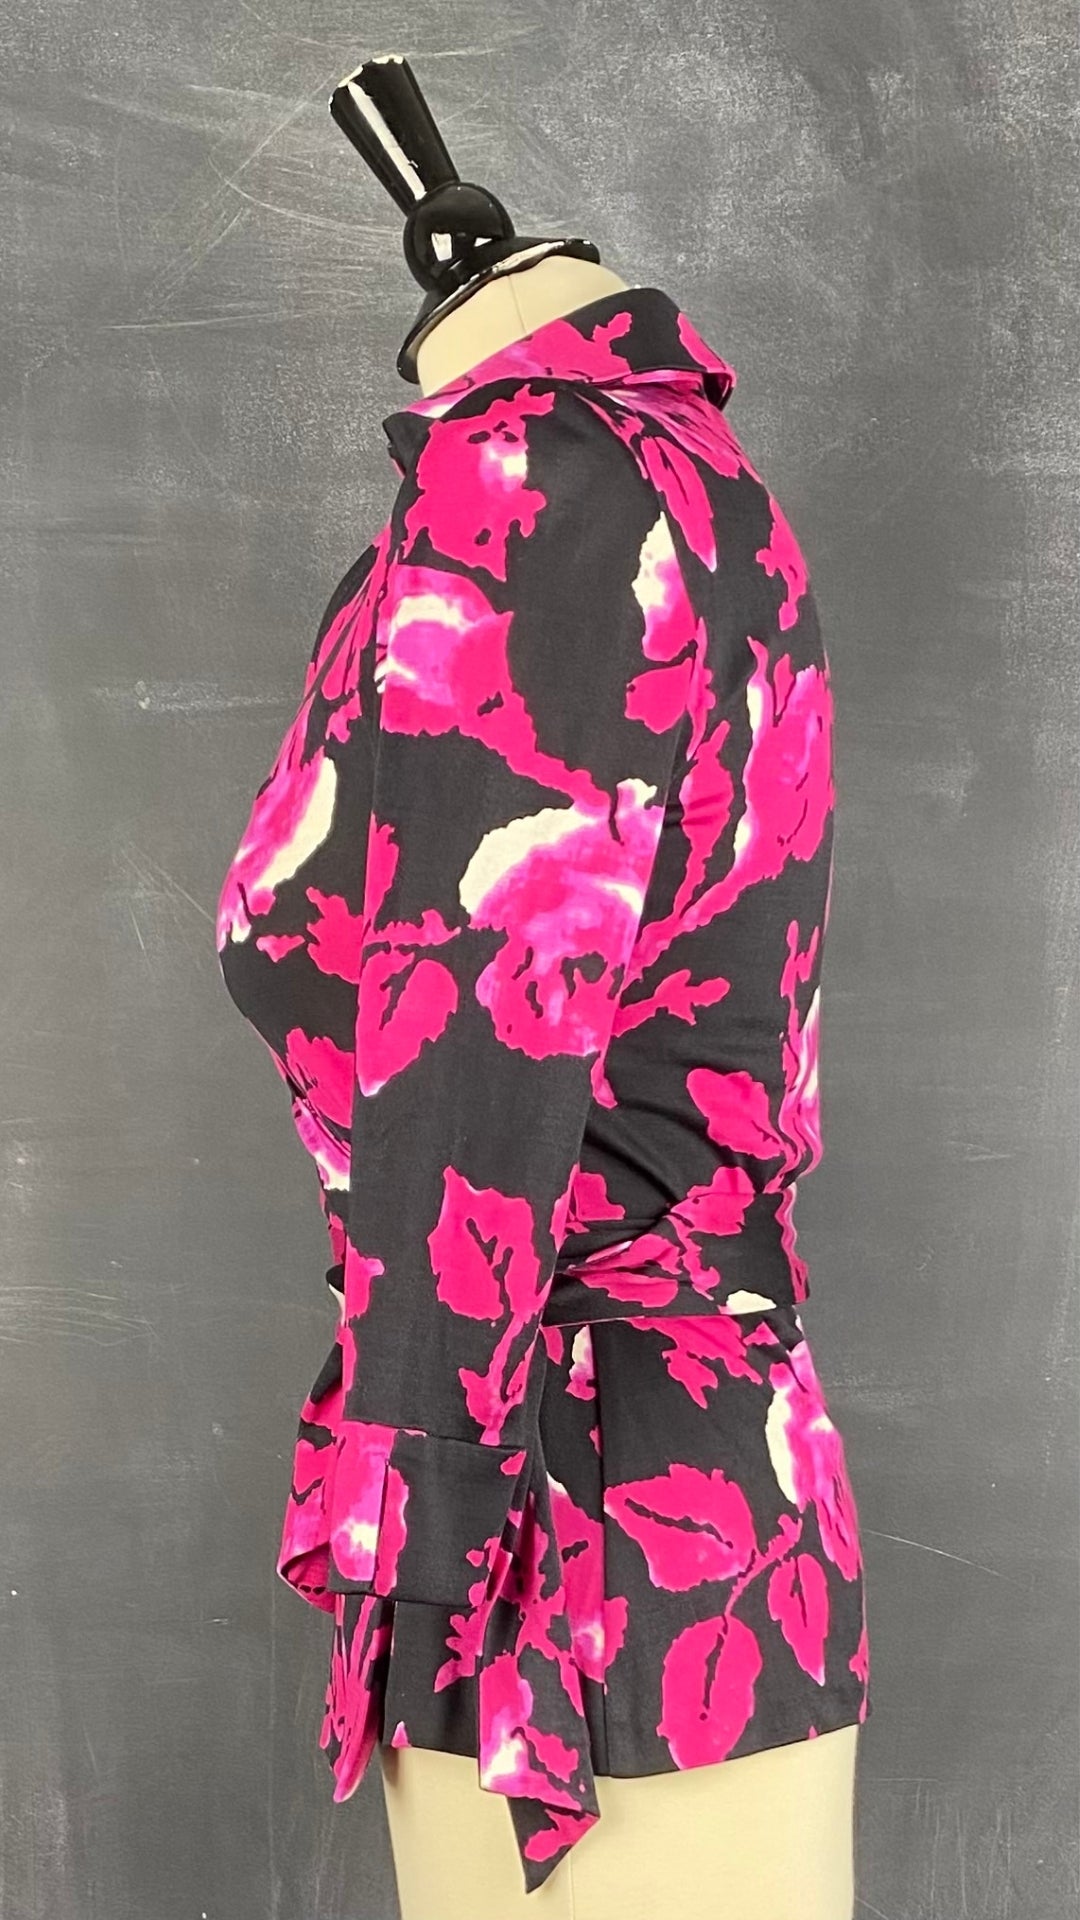 Haut cache-coeur floral en soie Diane von Furstenberg, taille 6. Vue de côté.